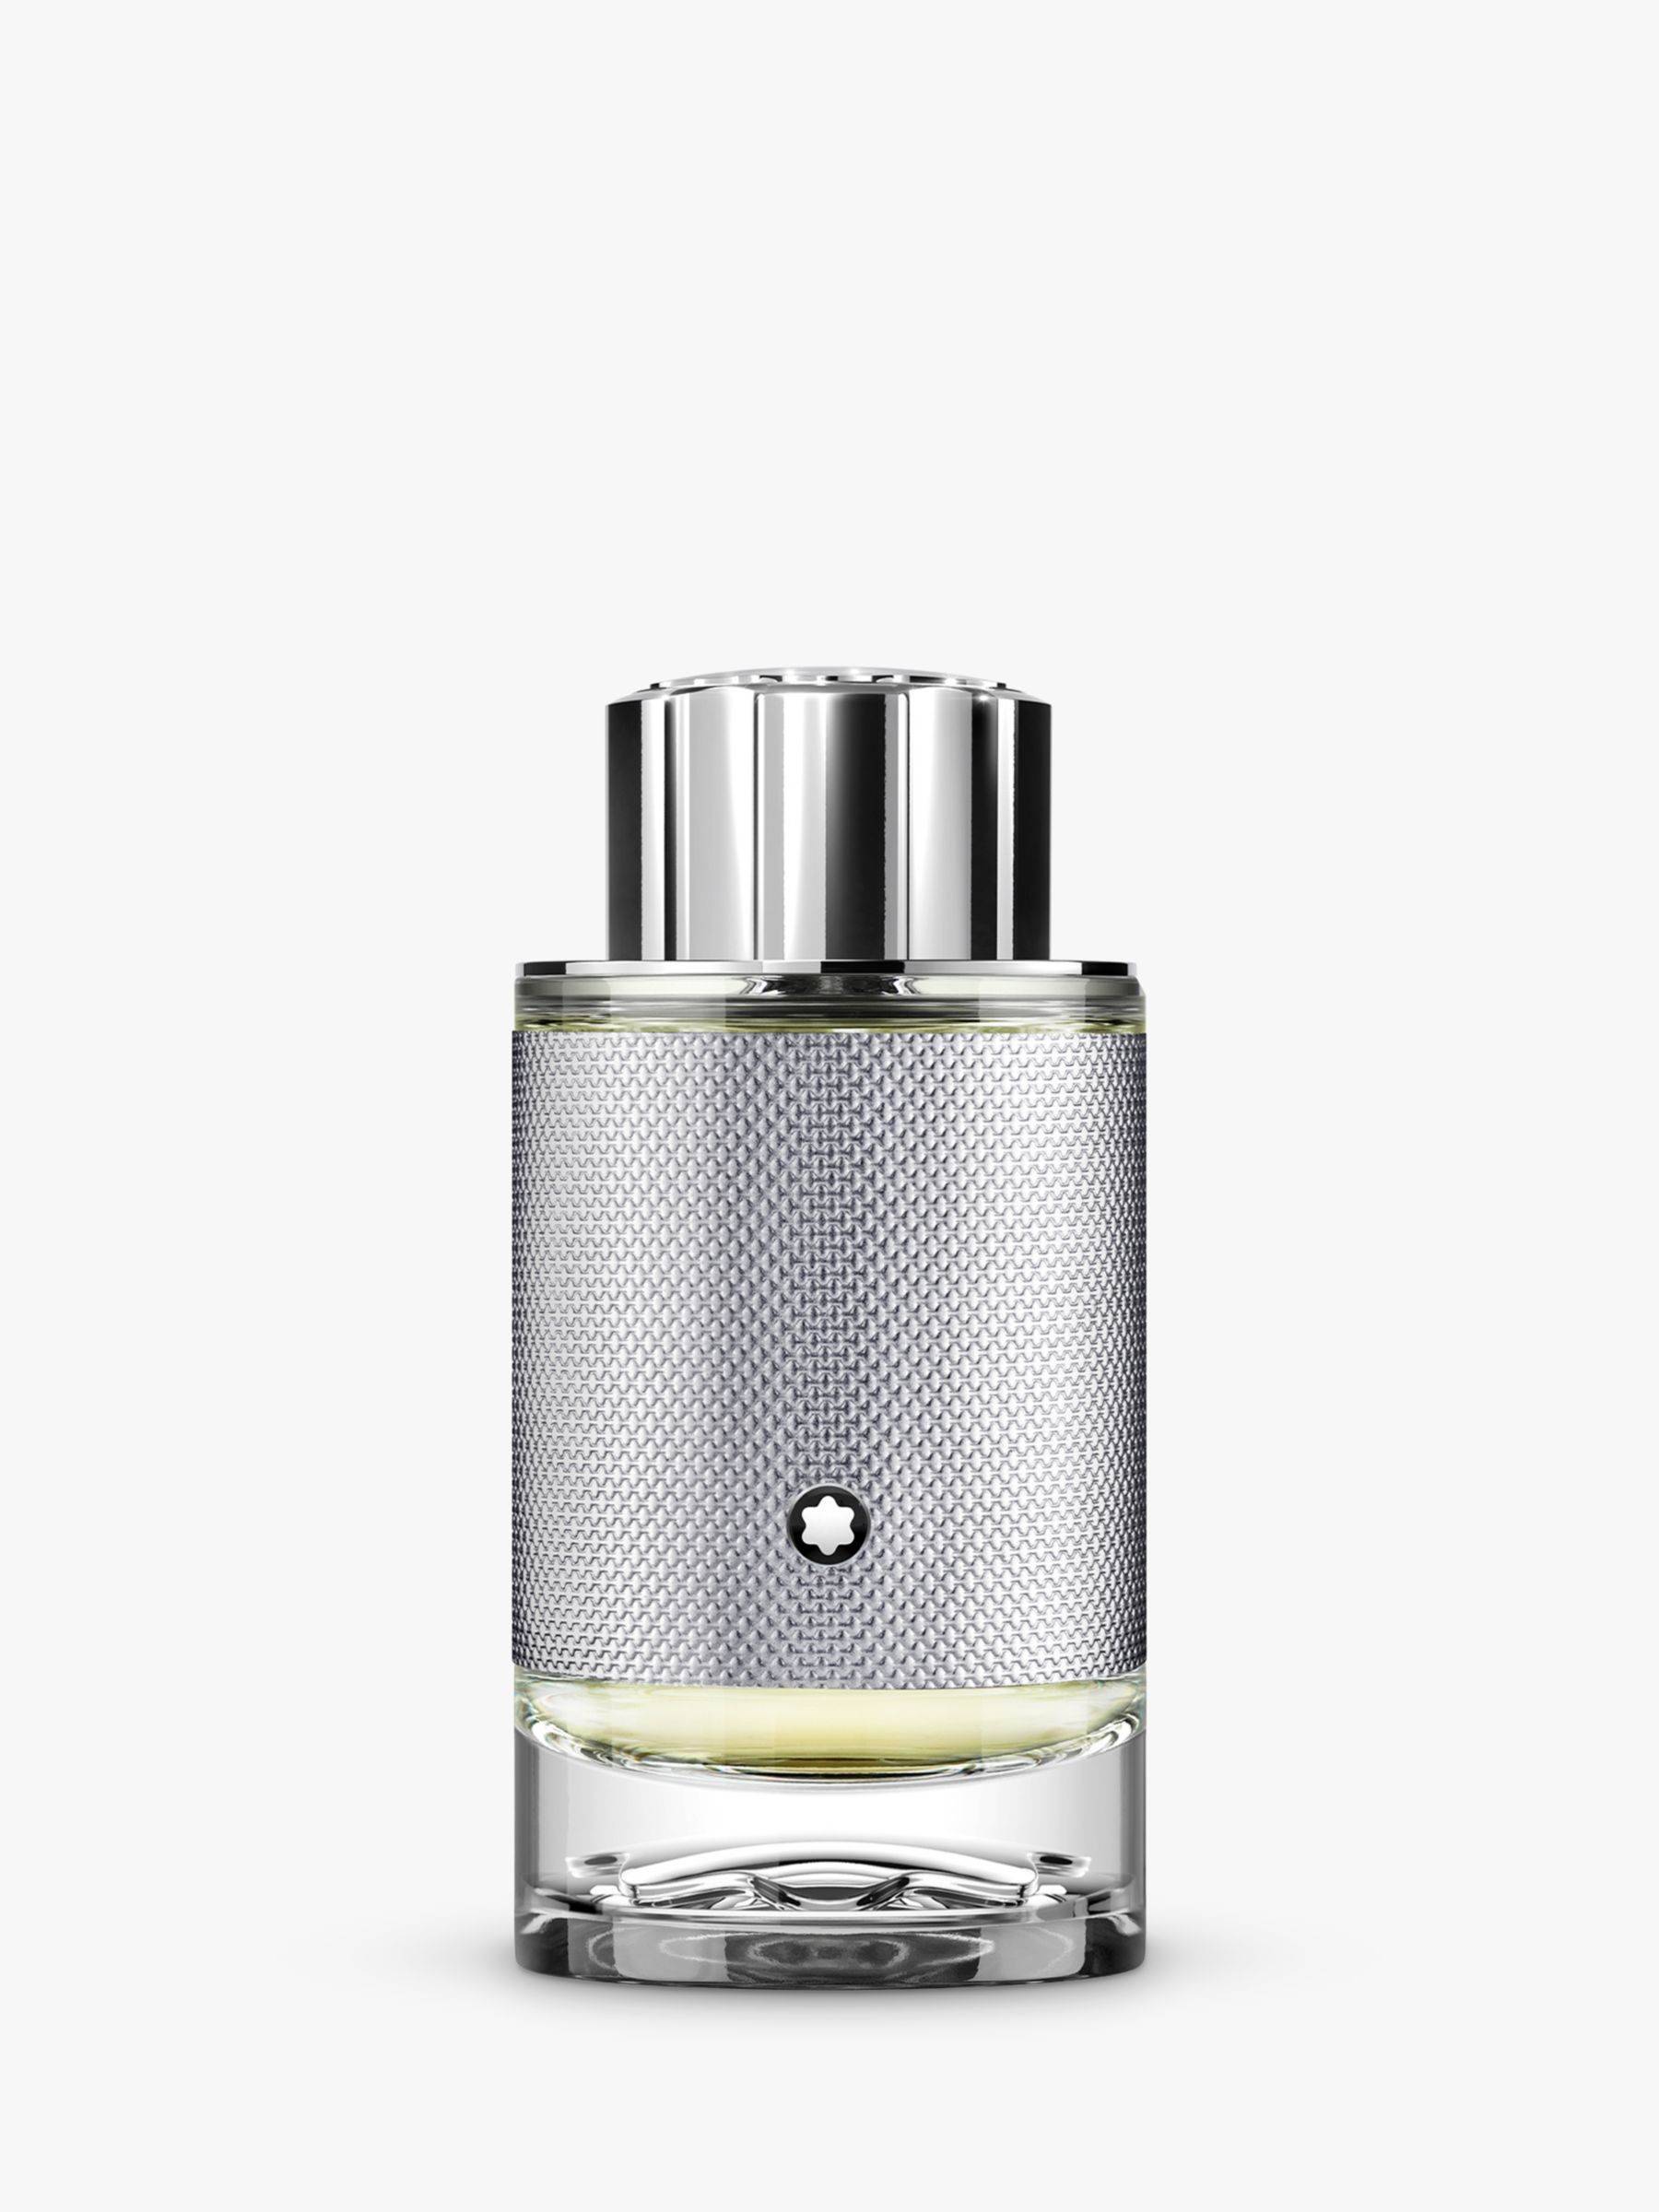 Montblanc Explorer Platinum Eau de Parfum, £79